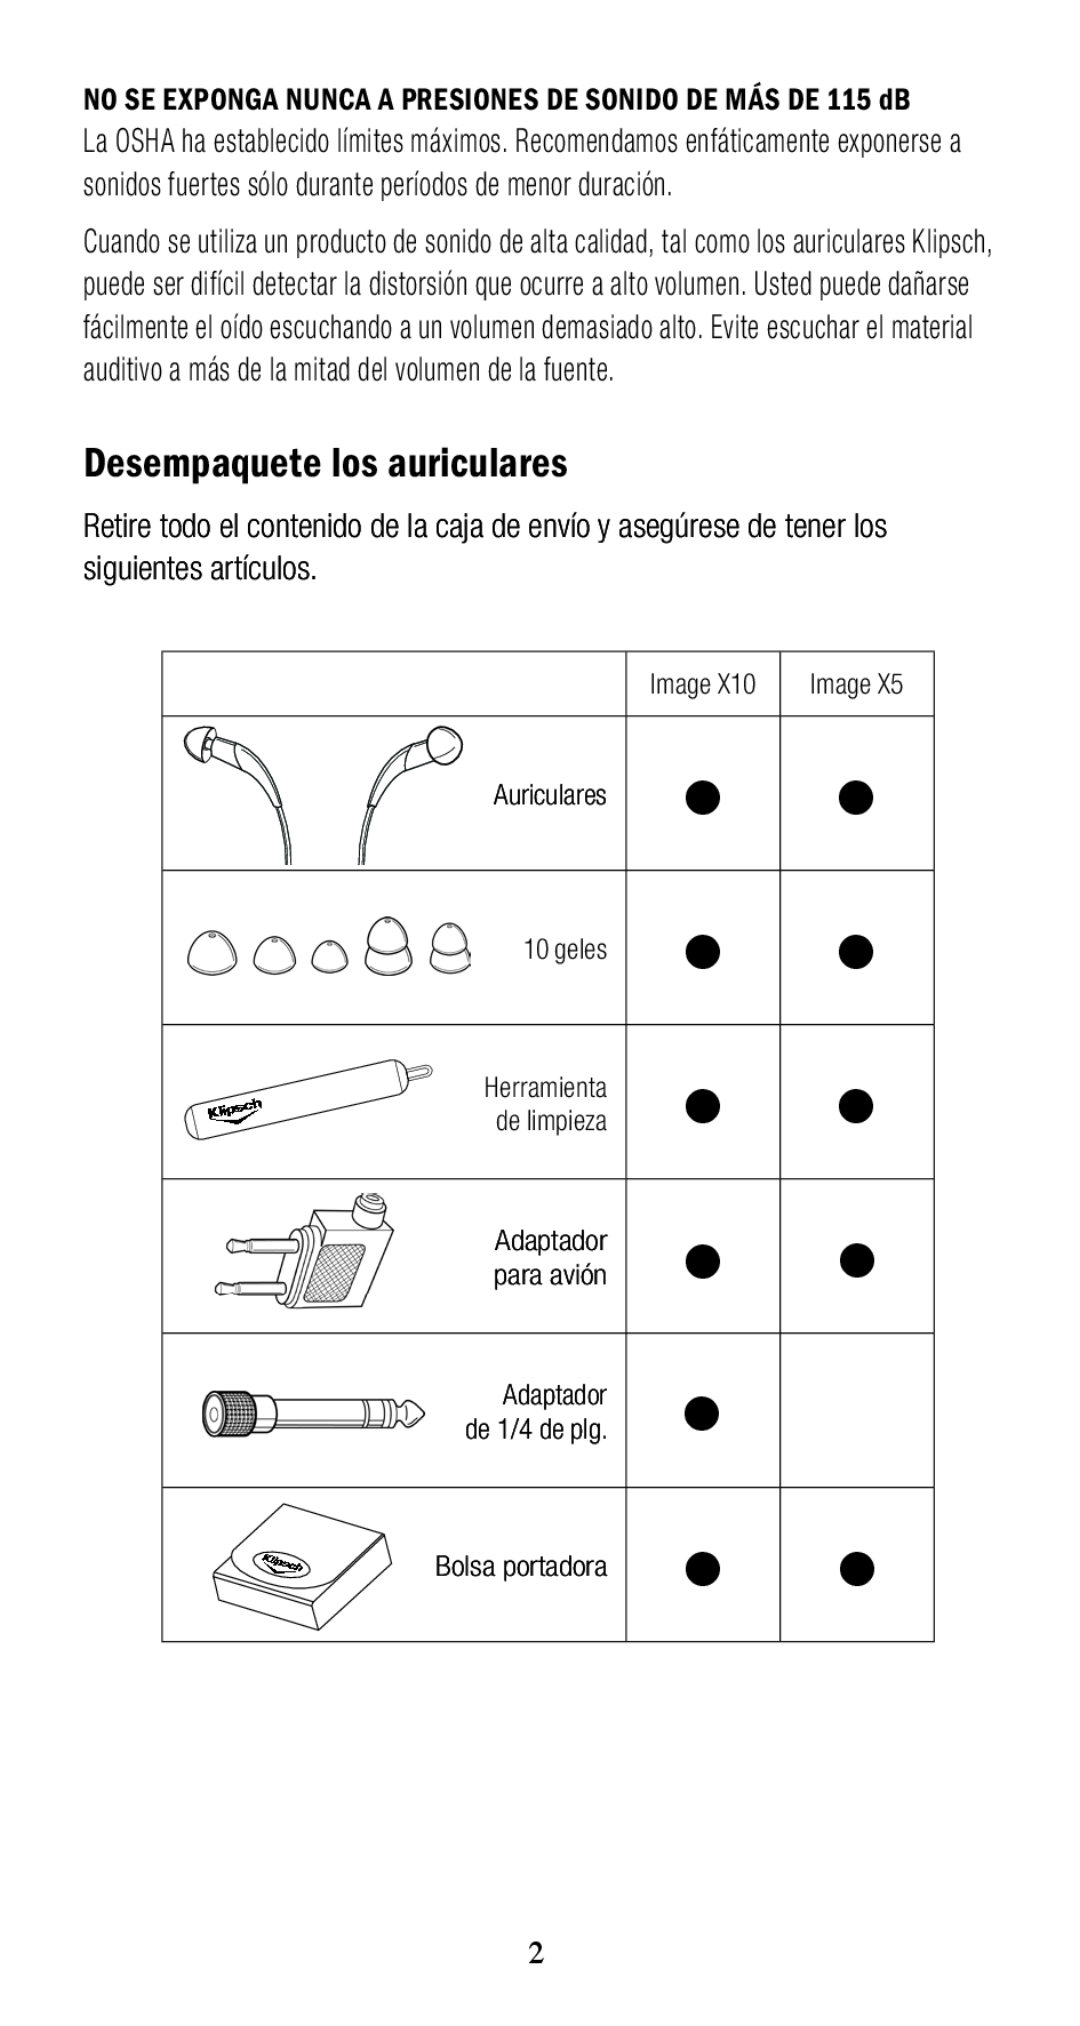 Klipsch 1010950 owner manual Desempaquete los auriculares, geles, Adaptador, Bolsa portadora 